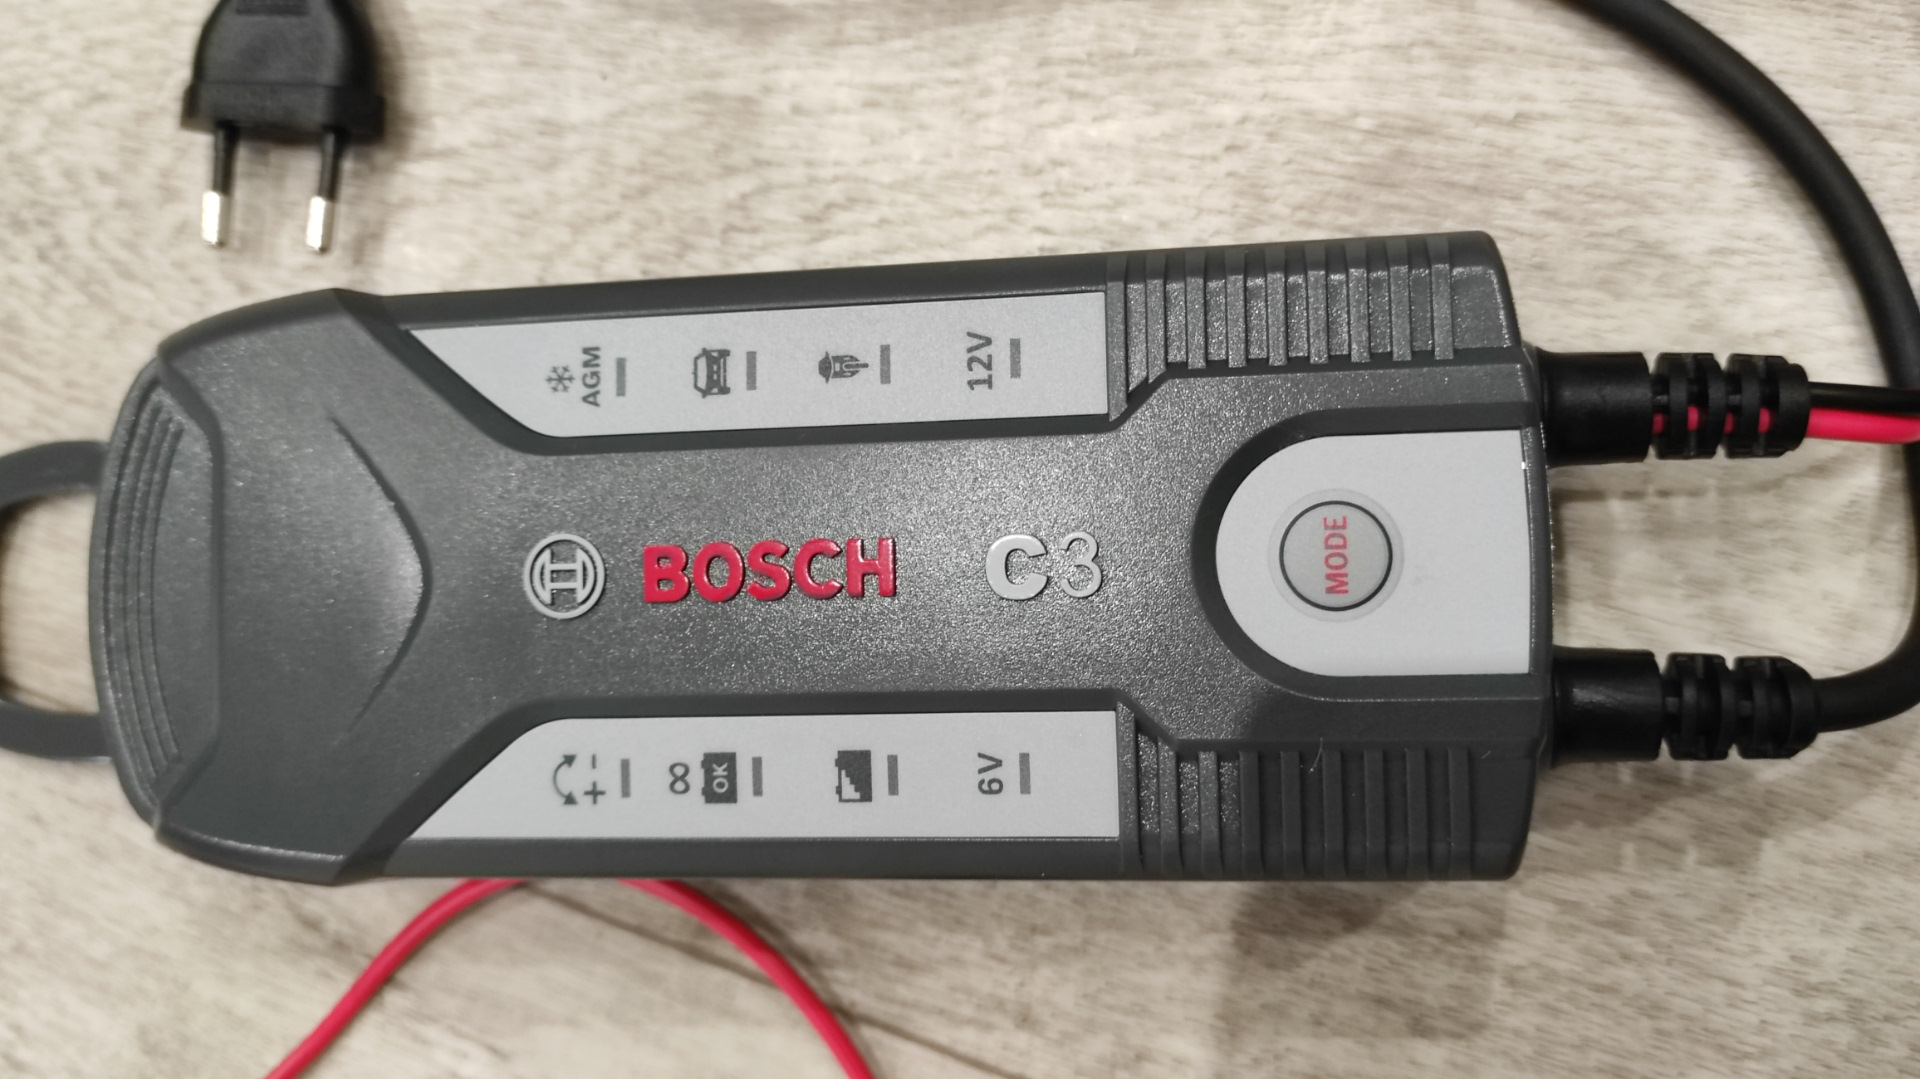 Eu зарядное устройство. Зарядник для аккумулятора Bosch. Бош с7 зарядное устройство как пользоваться. Как подключить к аккумулятору бош с3. Бош с7 зарядное устройство инструкция на русском.